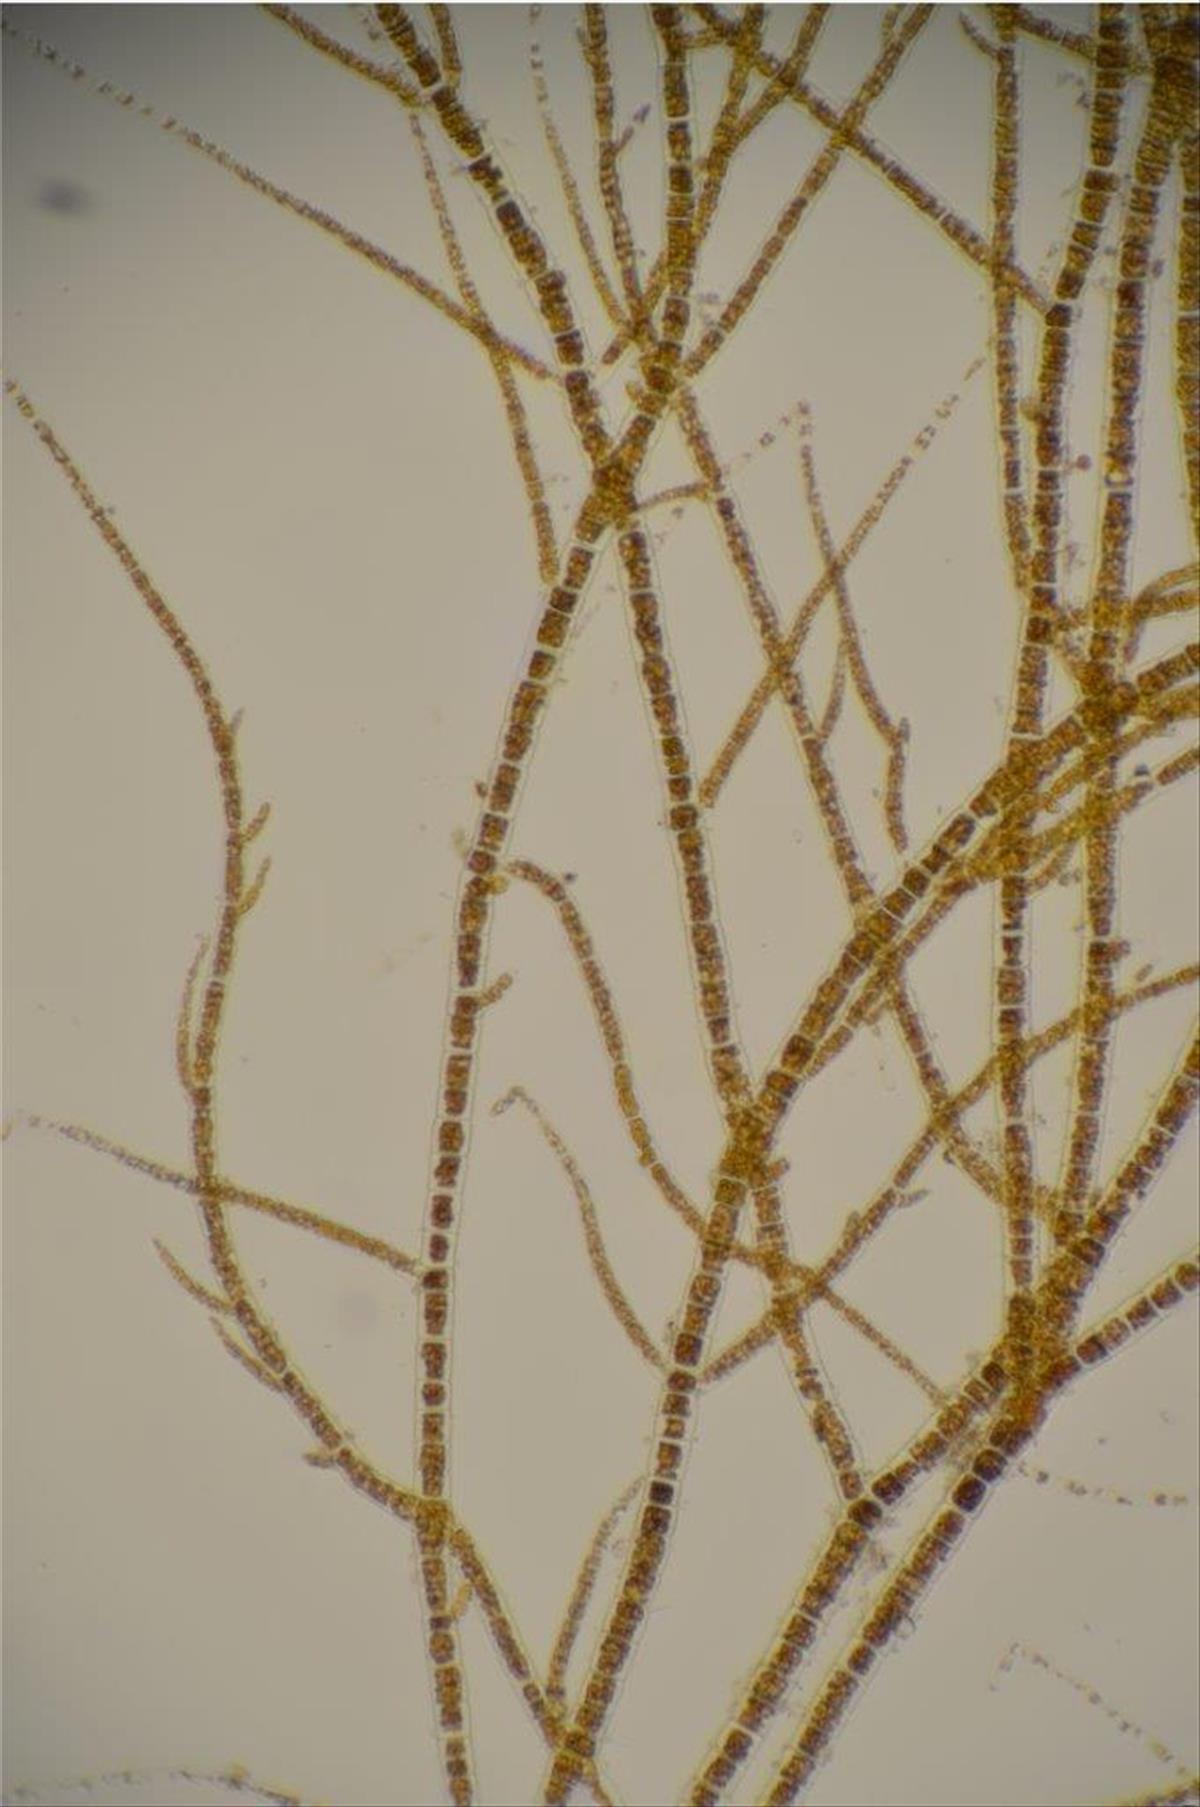 Pylaiella littoralis (door Mart Karremans)